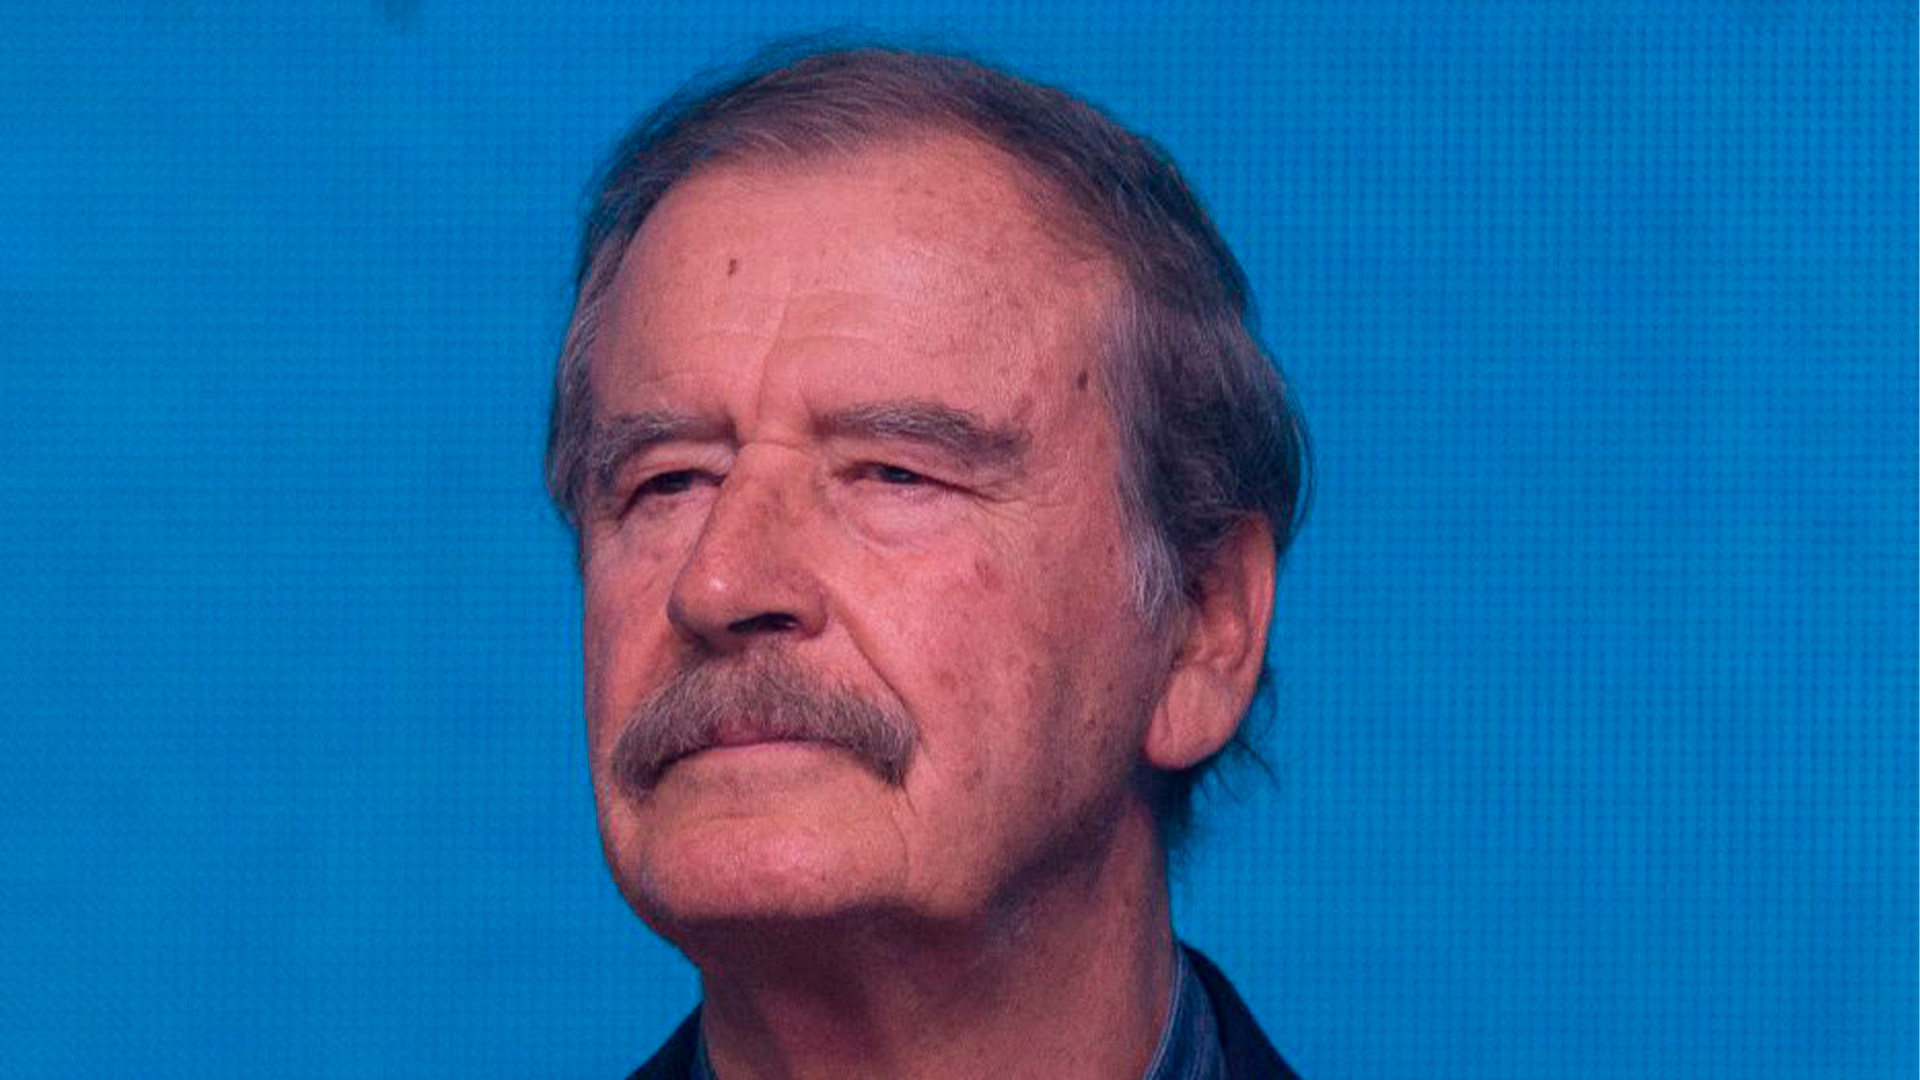 “No ves mi coraje, López”: la broma de Vicente Fox sobre el Popocatépetl que desató las burlas contra el exmandatario 